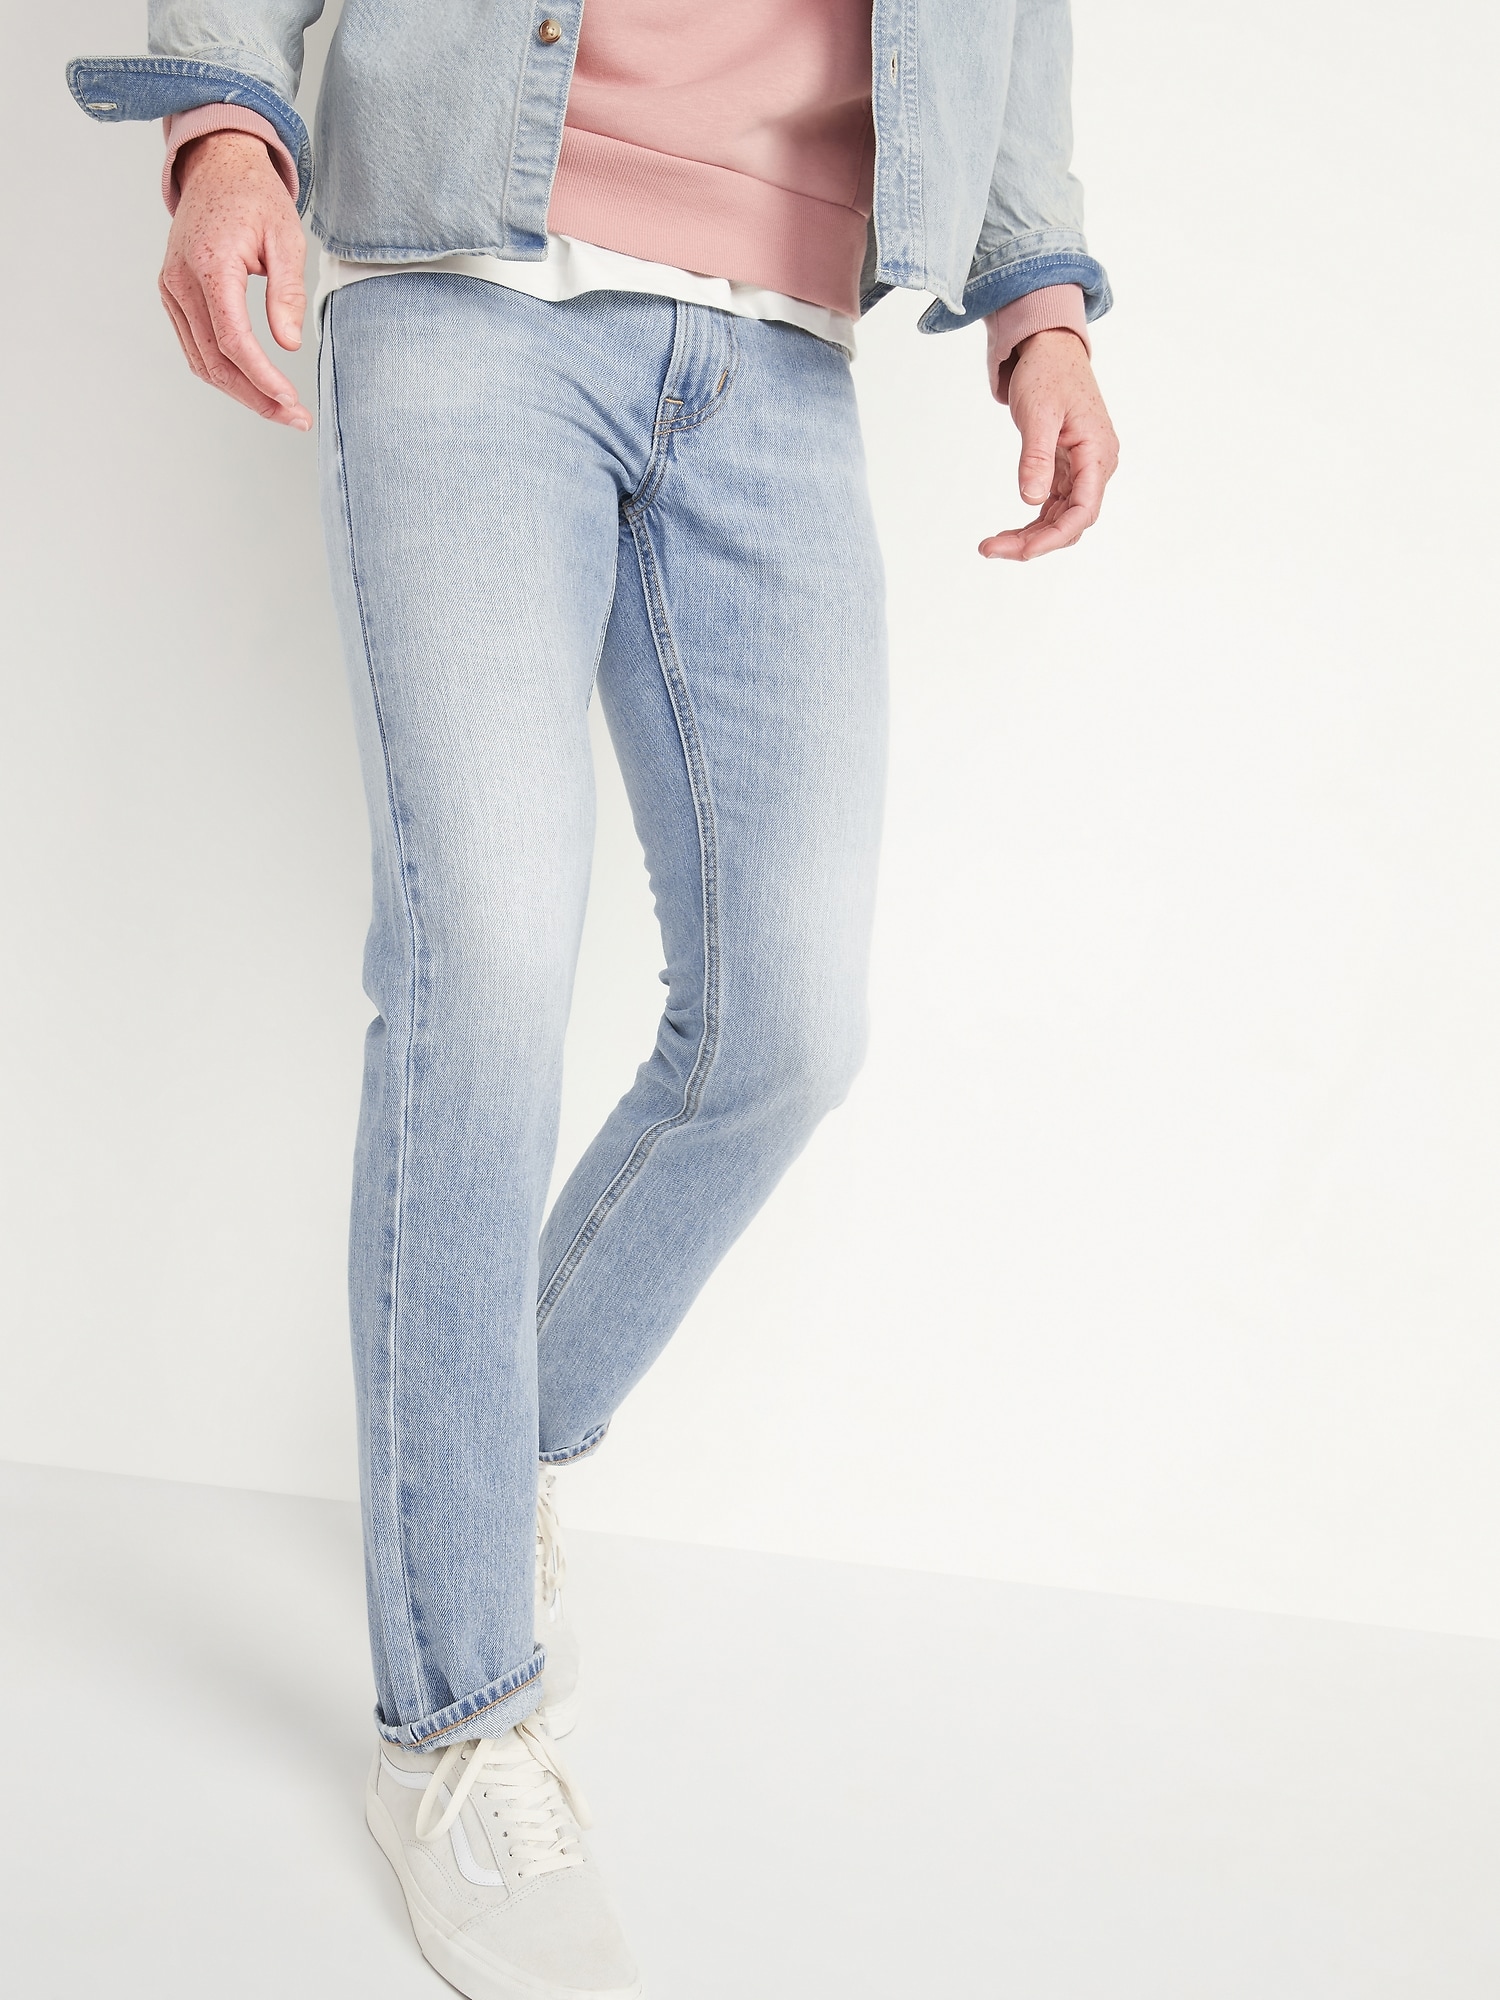 Slim Rigid Non-Stretch Light-Wash Jeans for Men